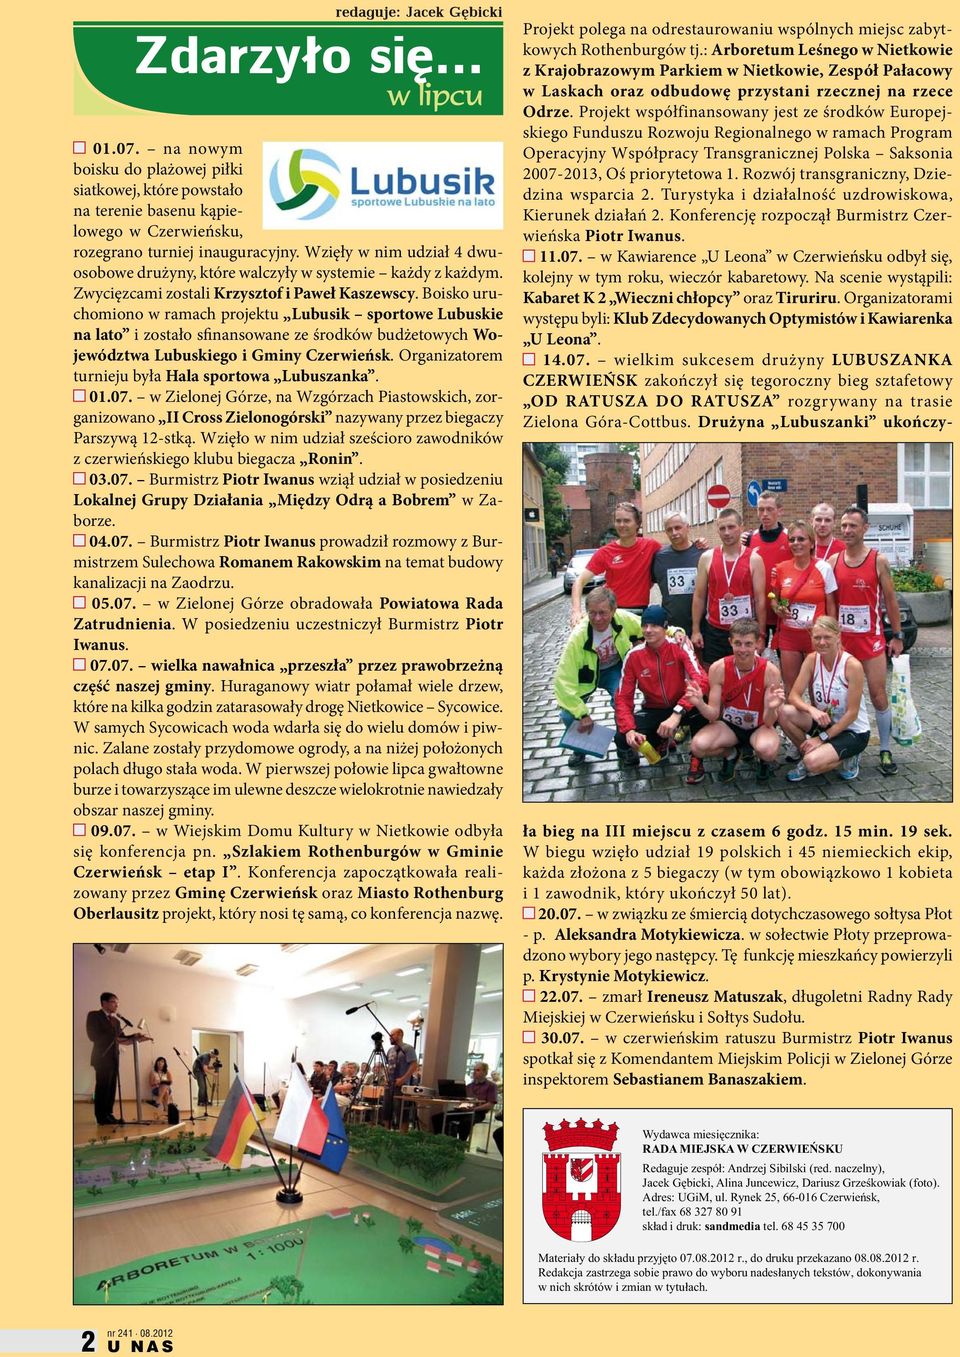 Boisko uruchomiono w ramach projektu Lubusik sportowe Lubuskie na lato i zostało sfinansowane ze środków budżetowych Województwa Lubuskiego i Gminy Czerwieńsk.